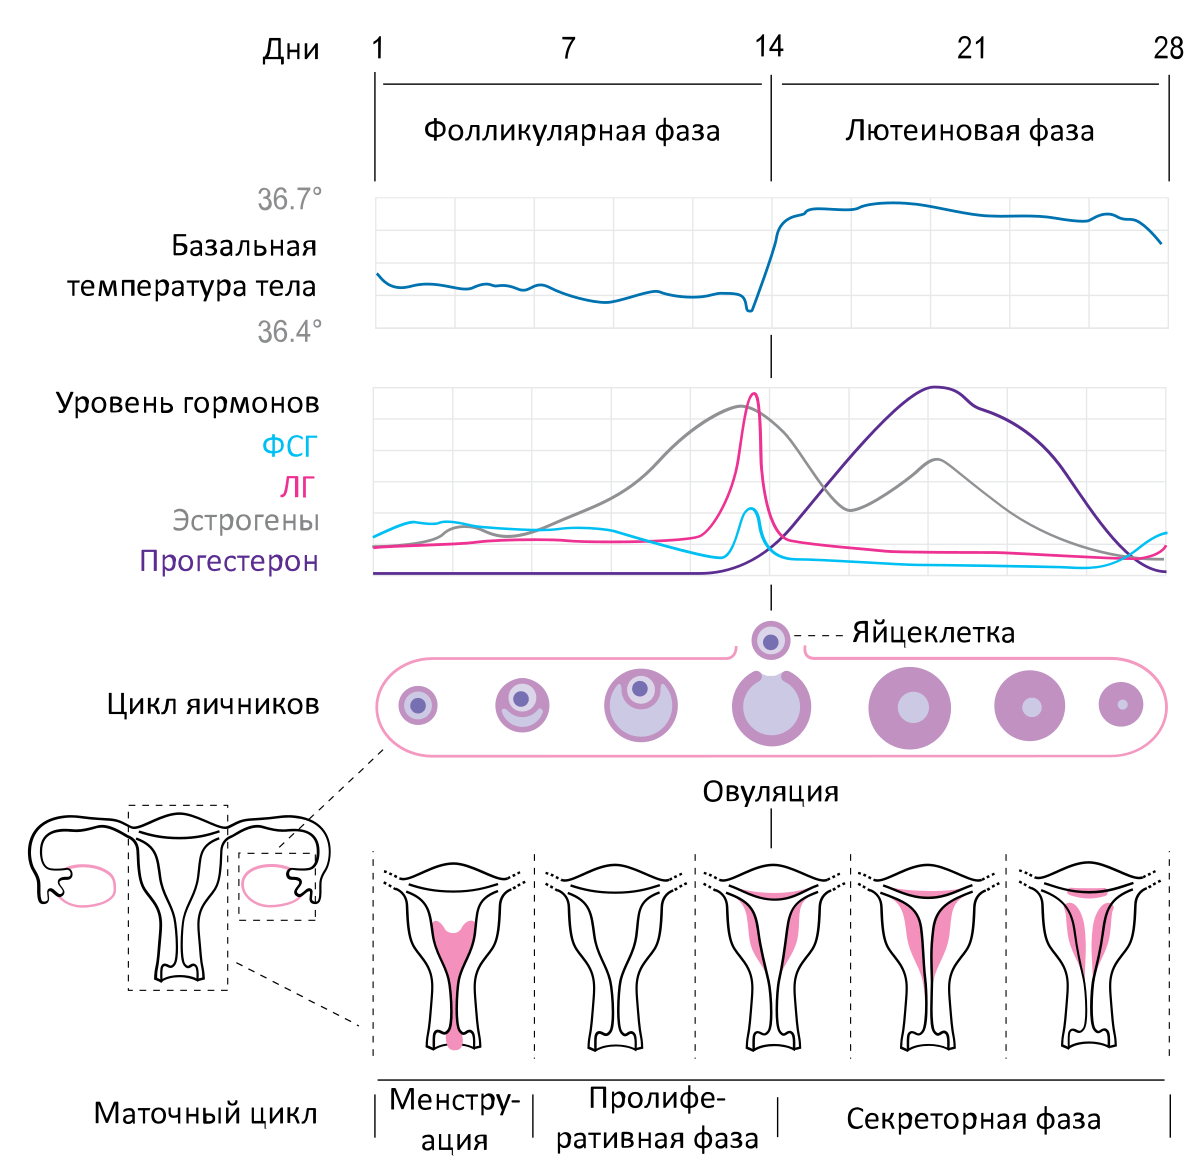 Kada je ovulacija? - menstrualni ciklus, faze menstrualnog ciklusa